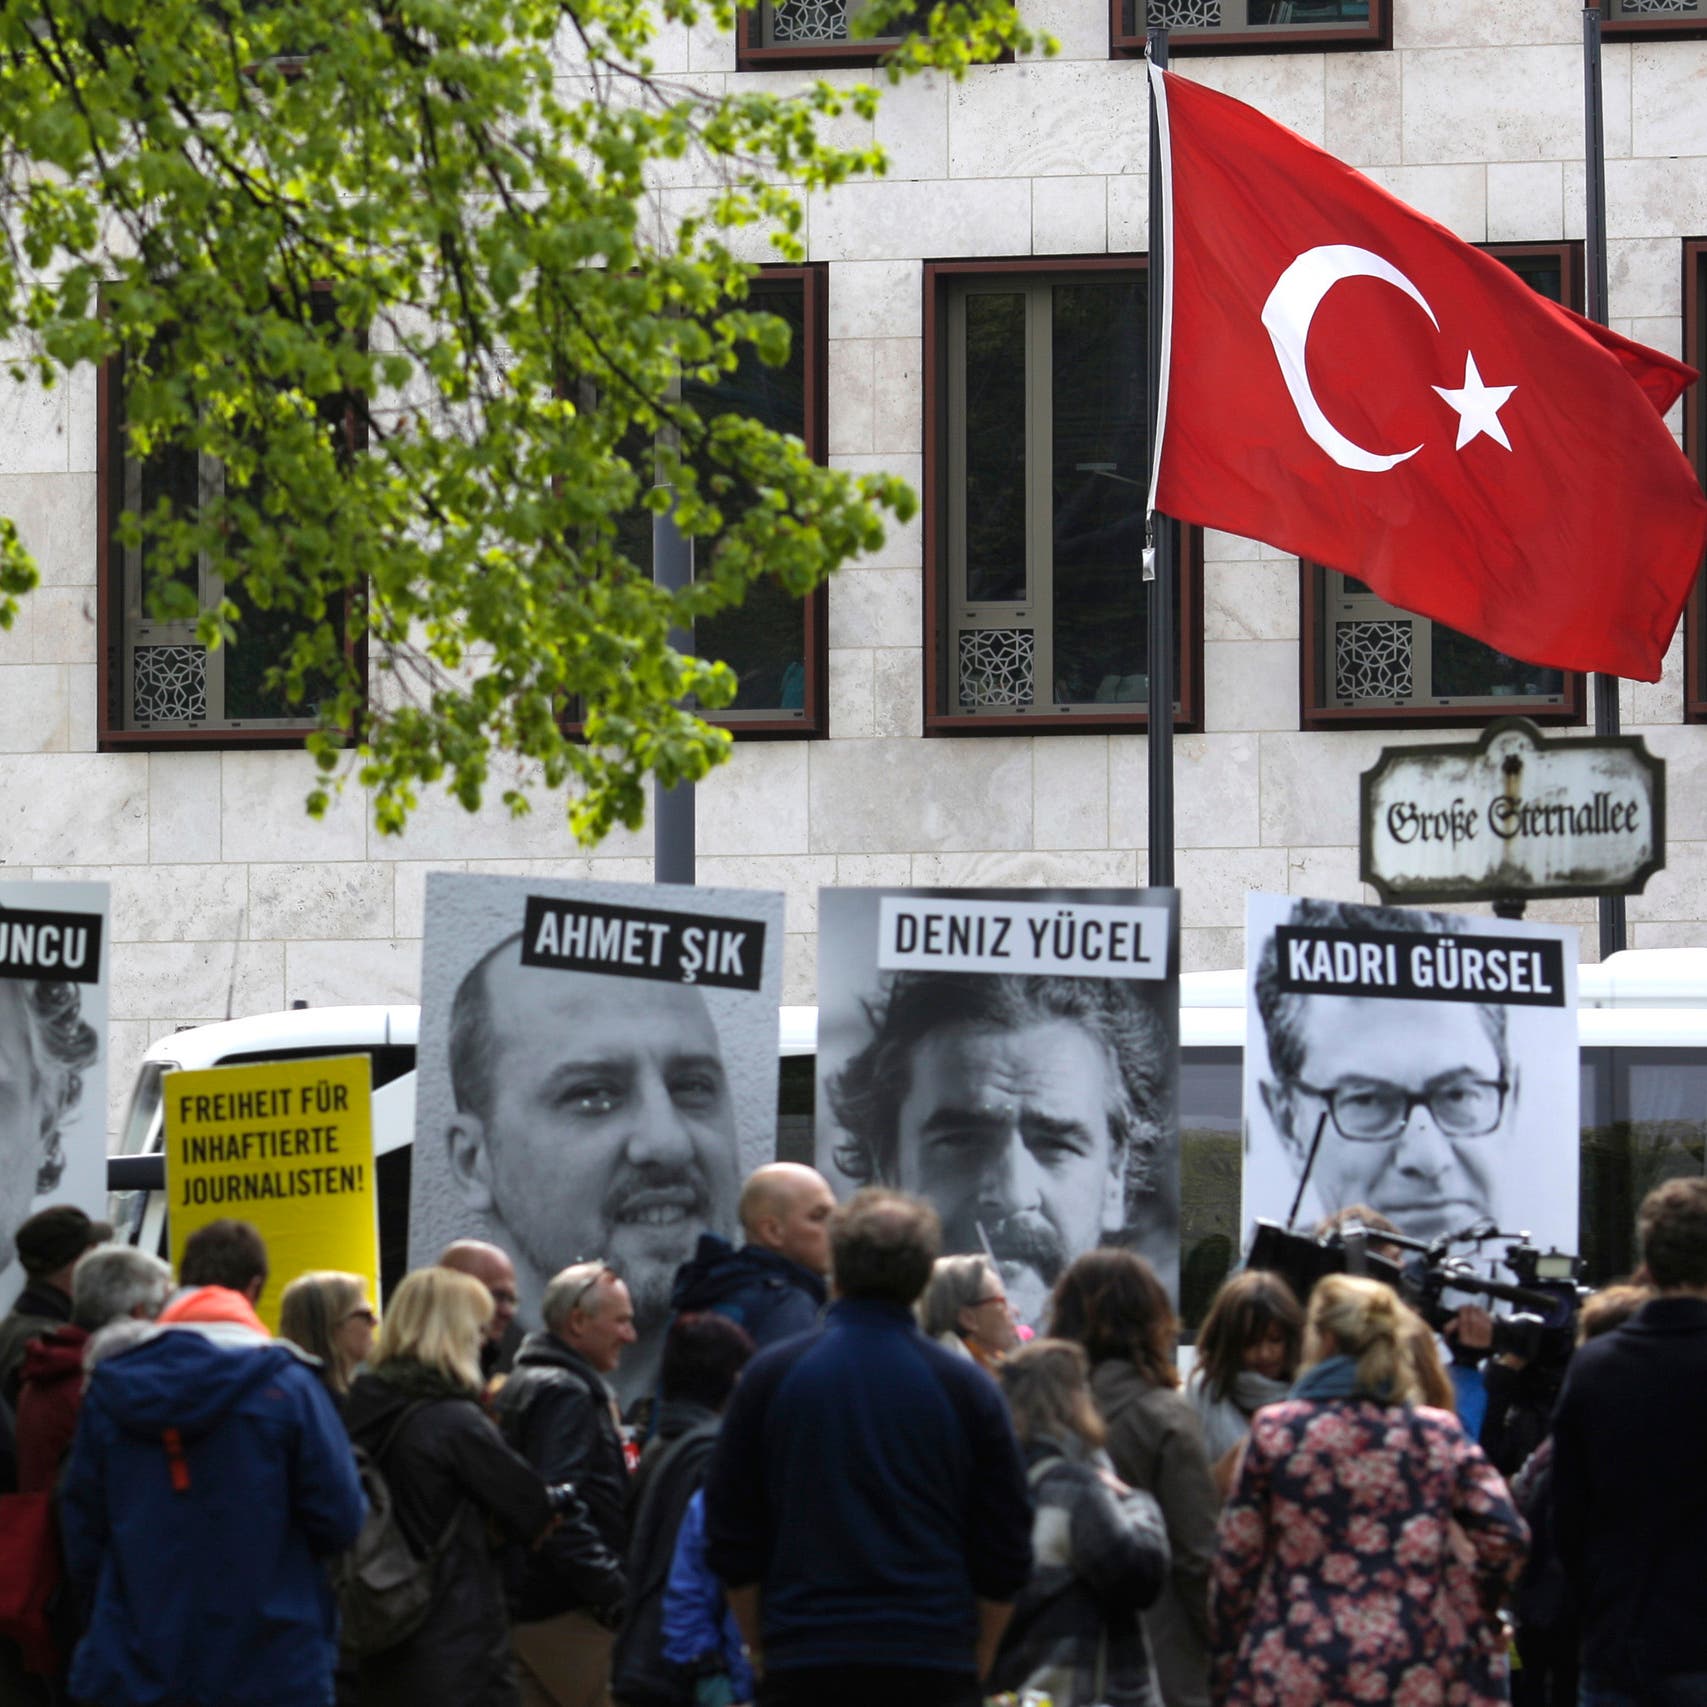 تركيا.. تنديد دولي بحرمان آلاف الصحافيين من بطاقات العمل